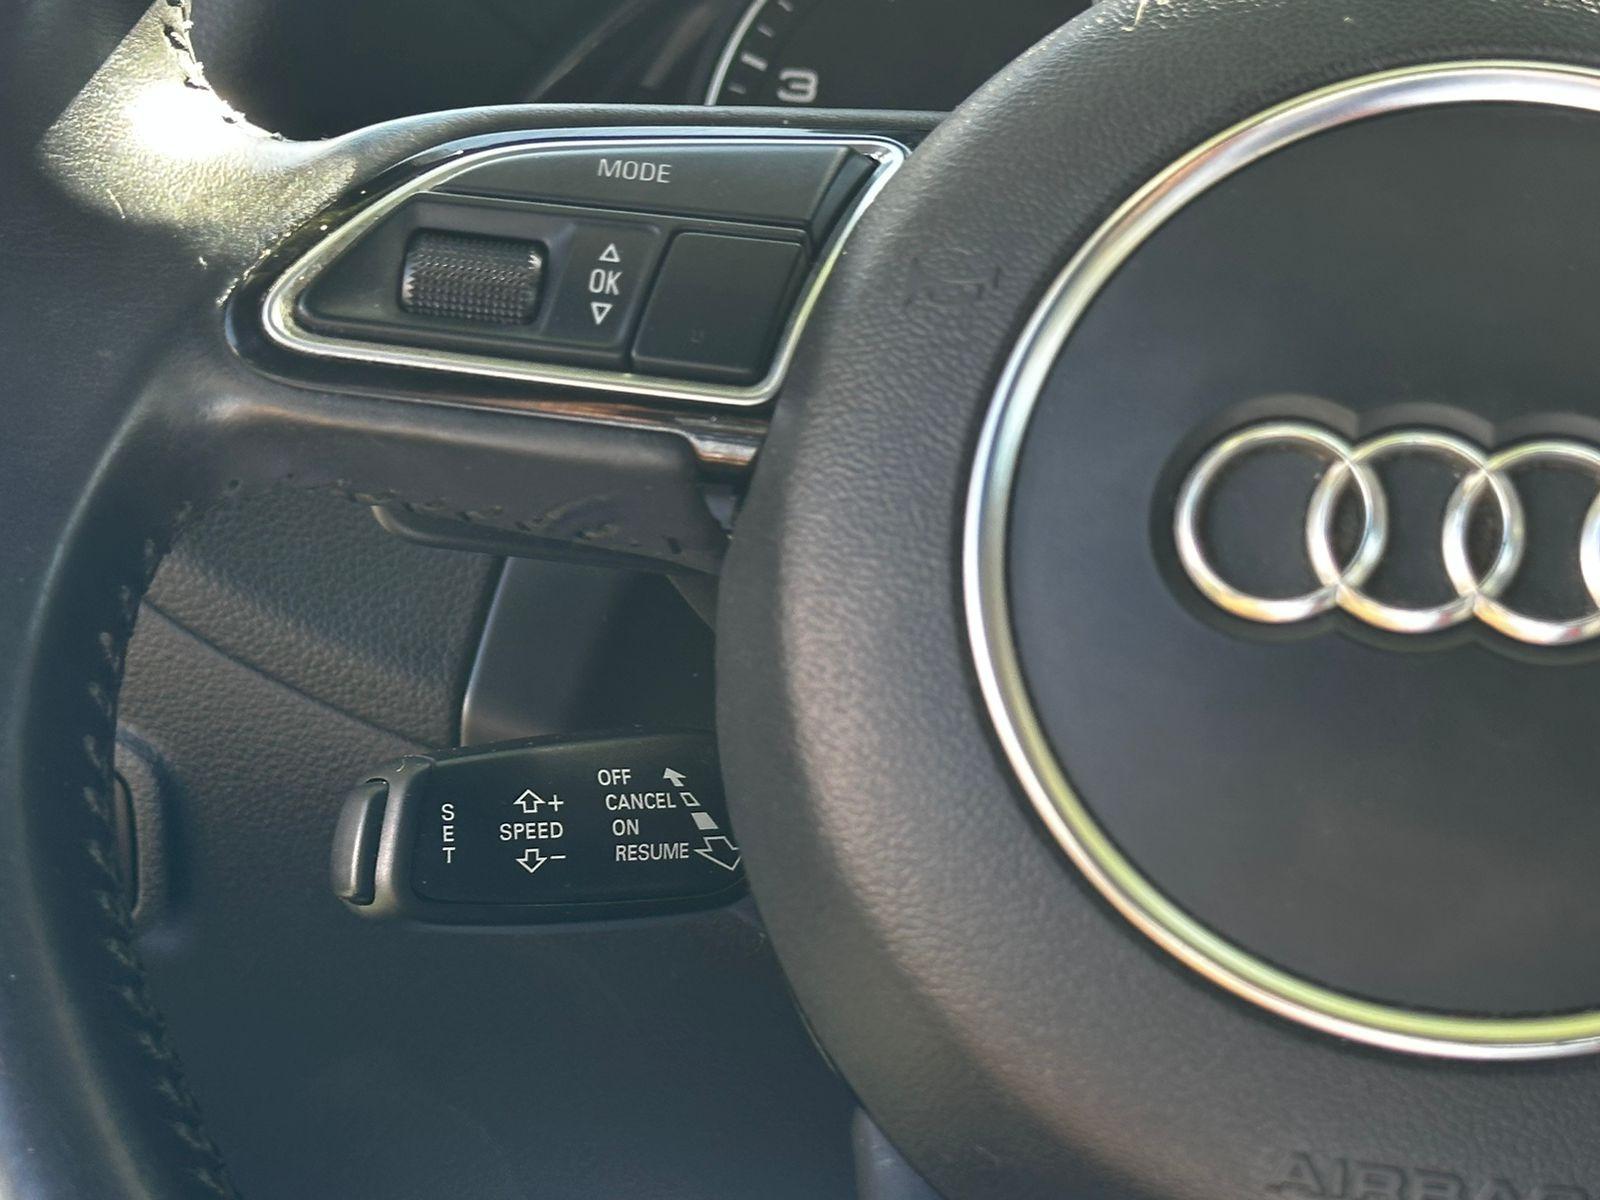 AUDI Q5 3.0 TFSI Auto Quattro 2015 CON MANTENCIONES / 4X4 - FULL MOTOR